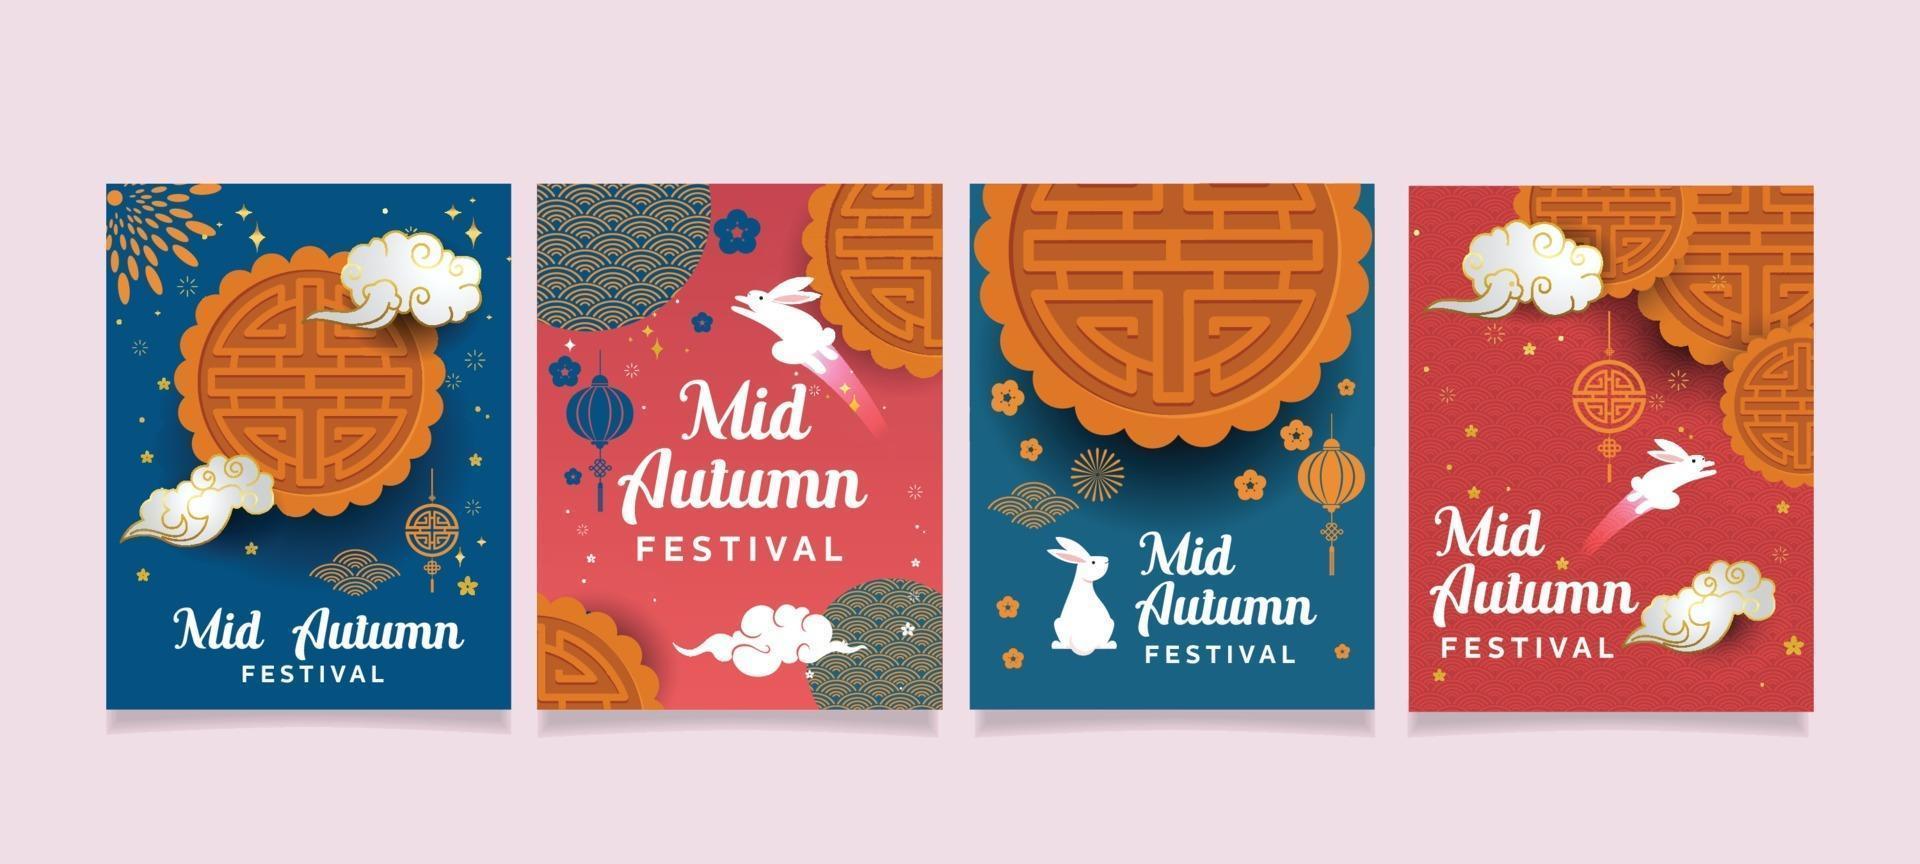 Mid Autumn Festival Card vector